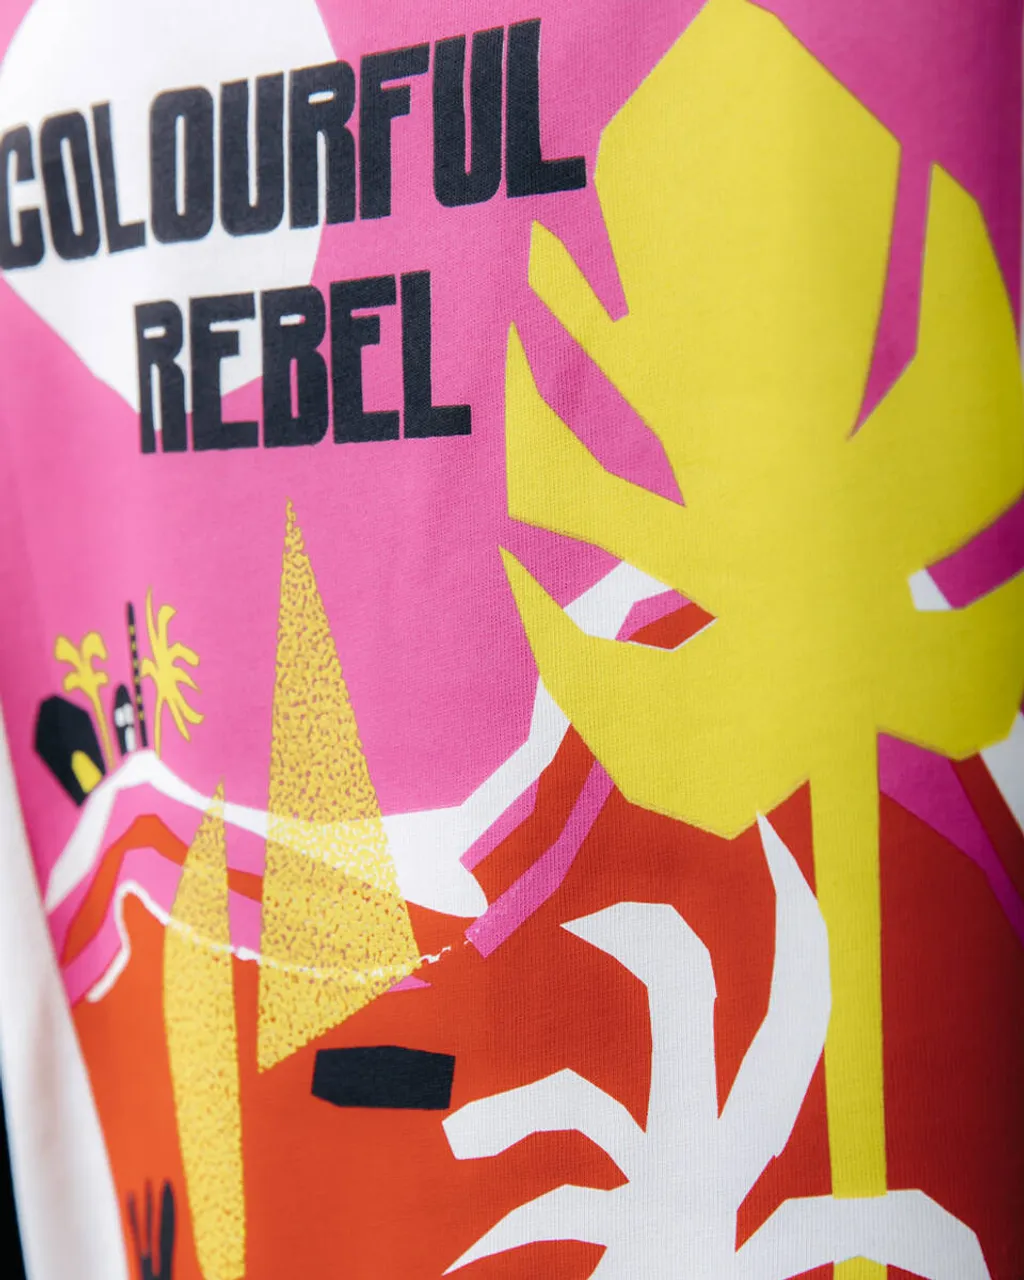 Colourful Rebel T-shirt wt115656 sol del sur